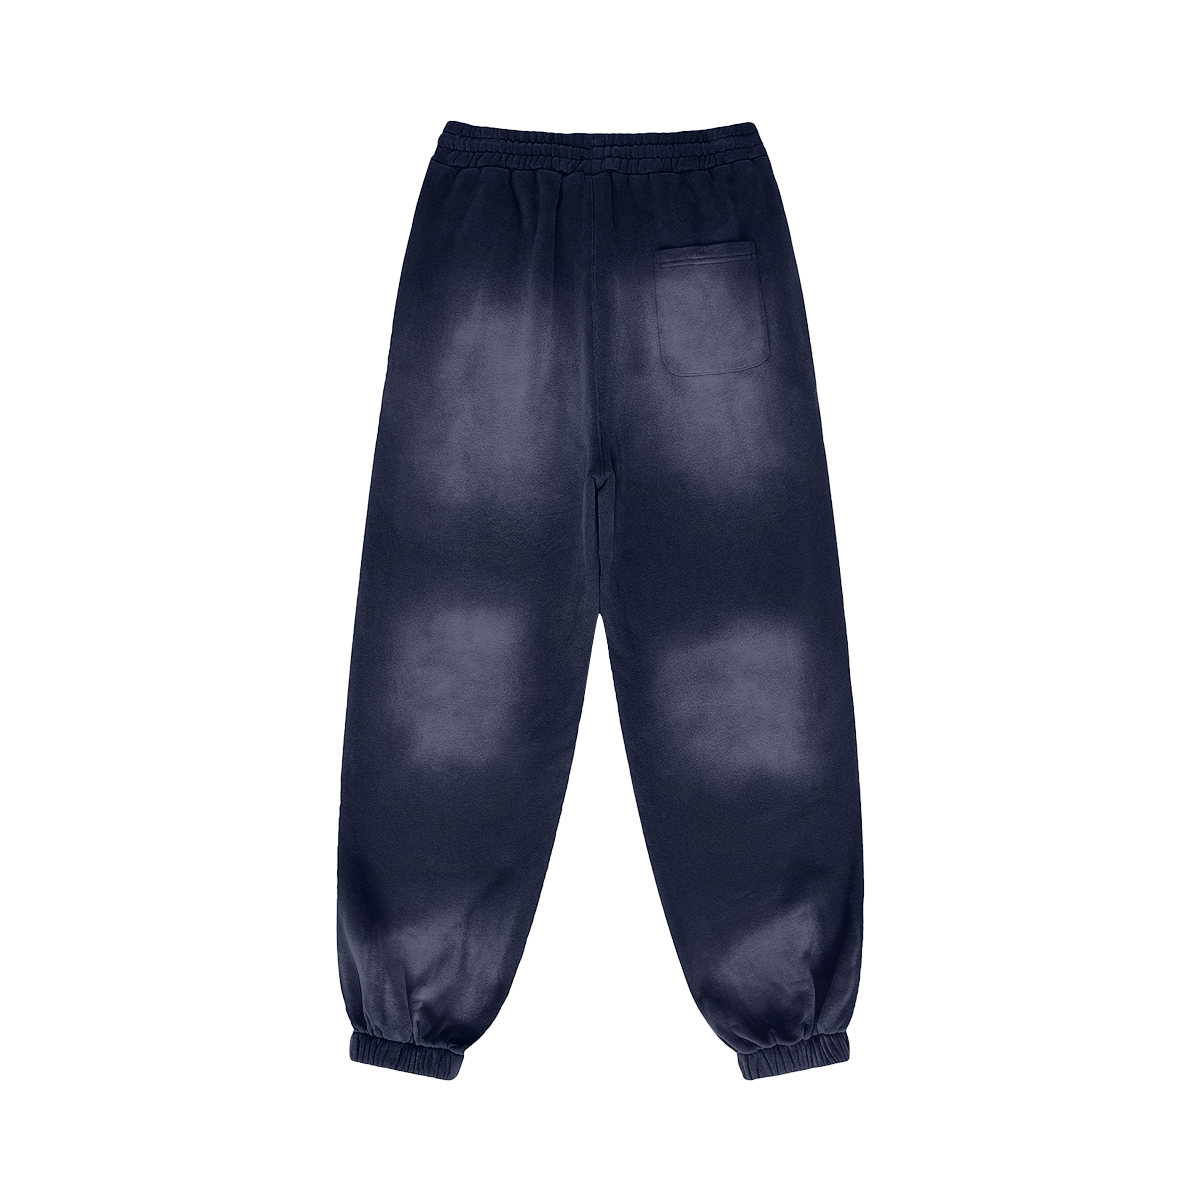 Heavyweight Sweatpants with heat transferred logo [NY635-865-CMV